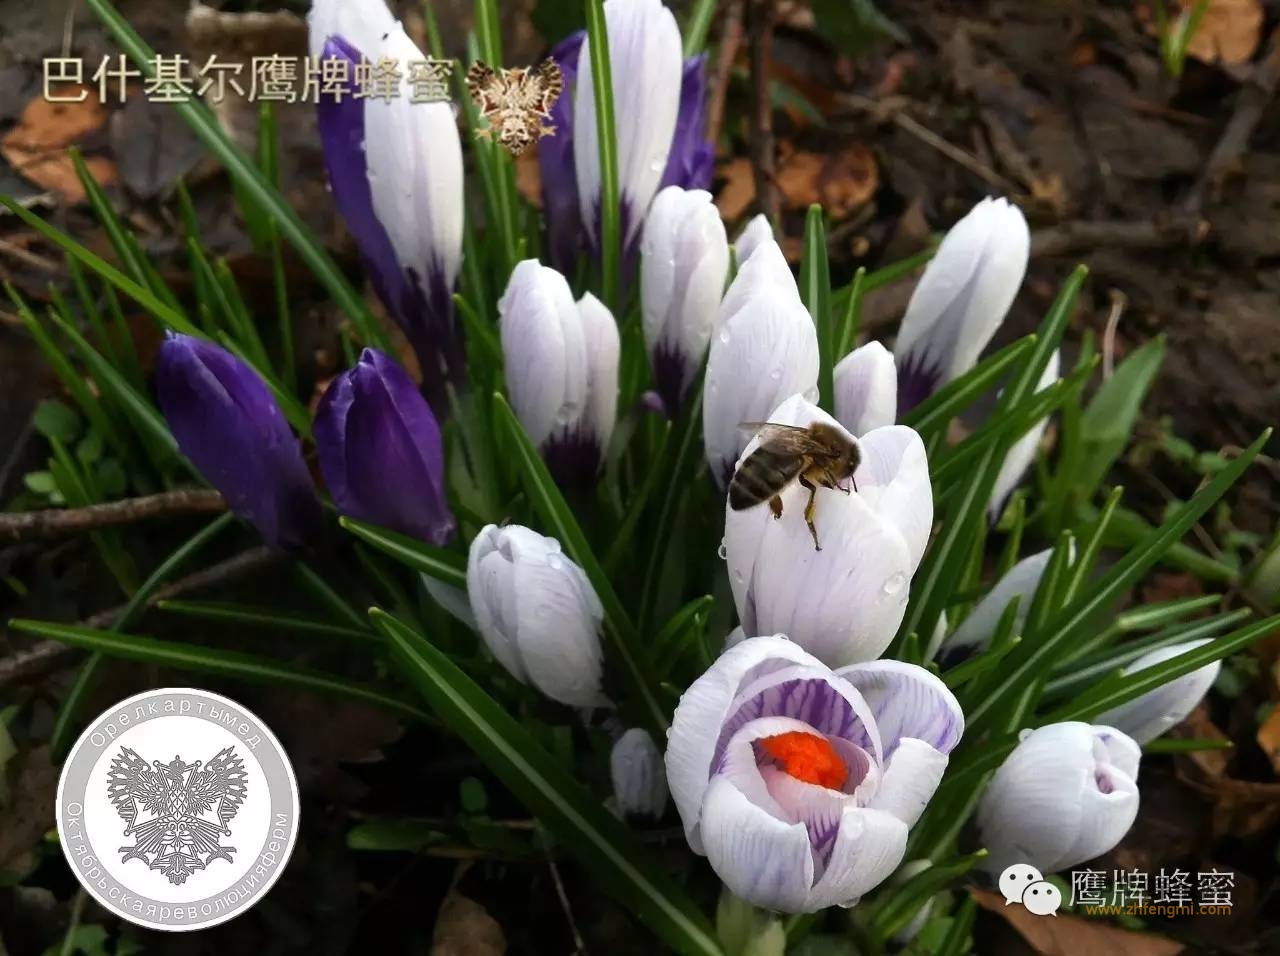 上海冠生园蜂蜜检出苯甲酸 公司称产品正常无添加剂